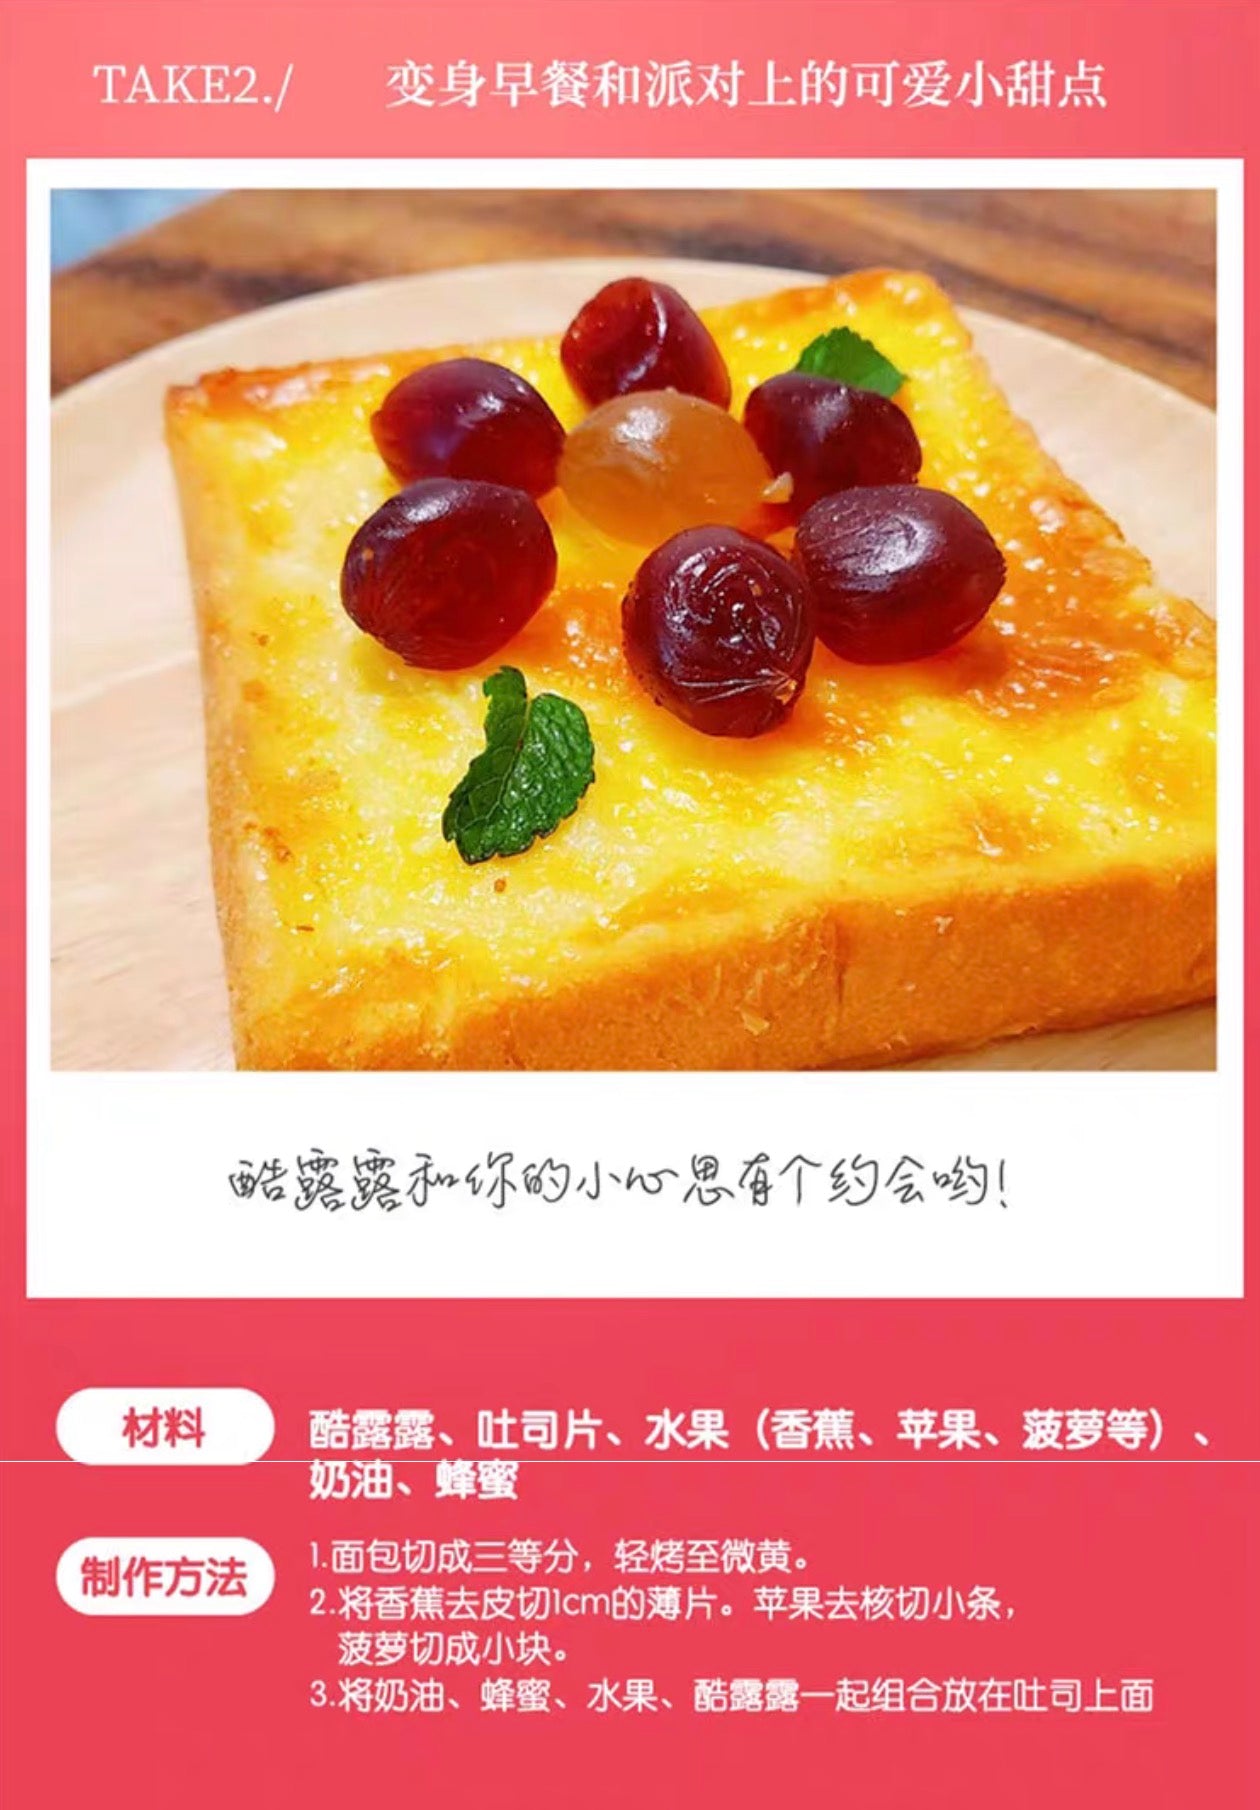 UHA悠哈味觉糖果汁软糖酷露露48g 草莓/白葡萄/葡萄/樱桃/汽水